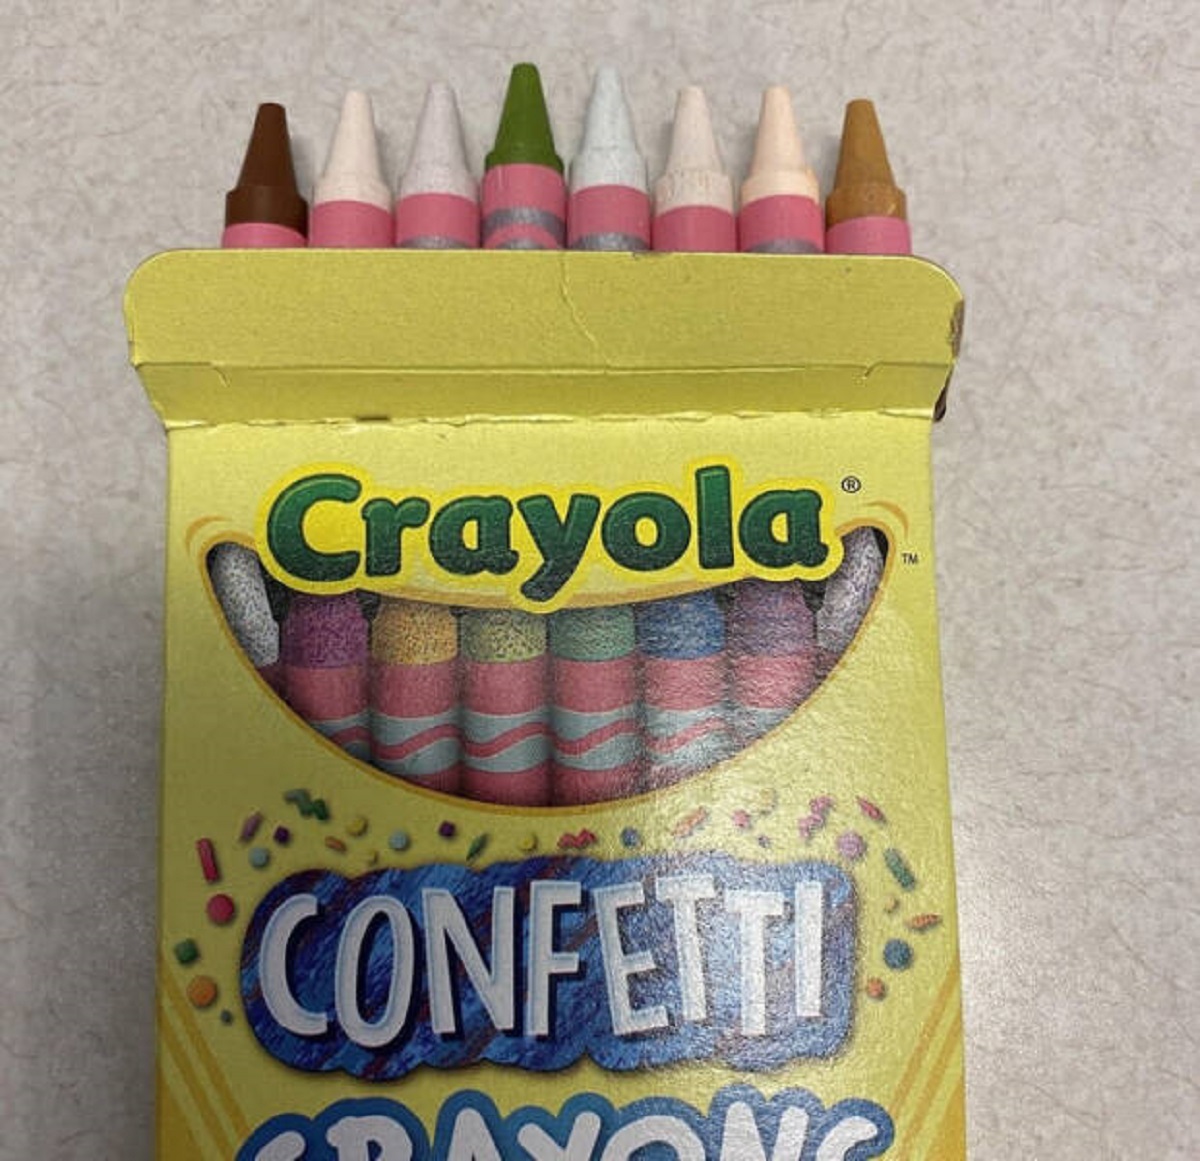 crayola crayon box png - Crayola Confetti Tm